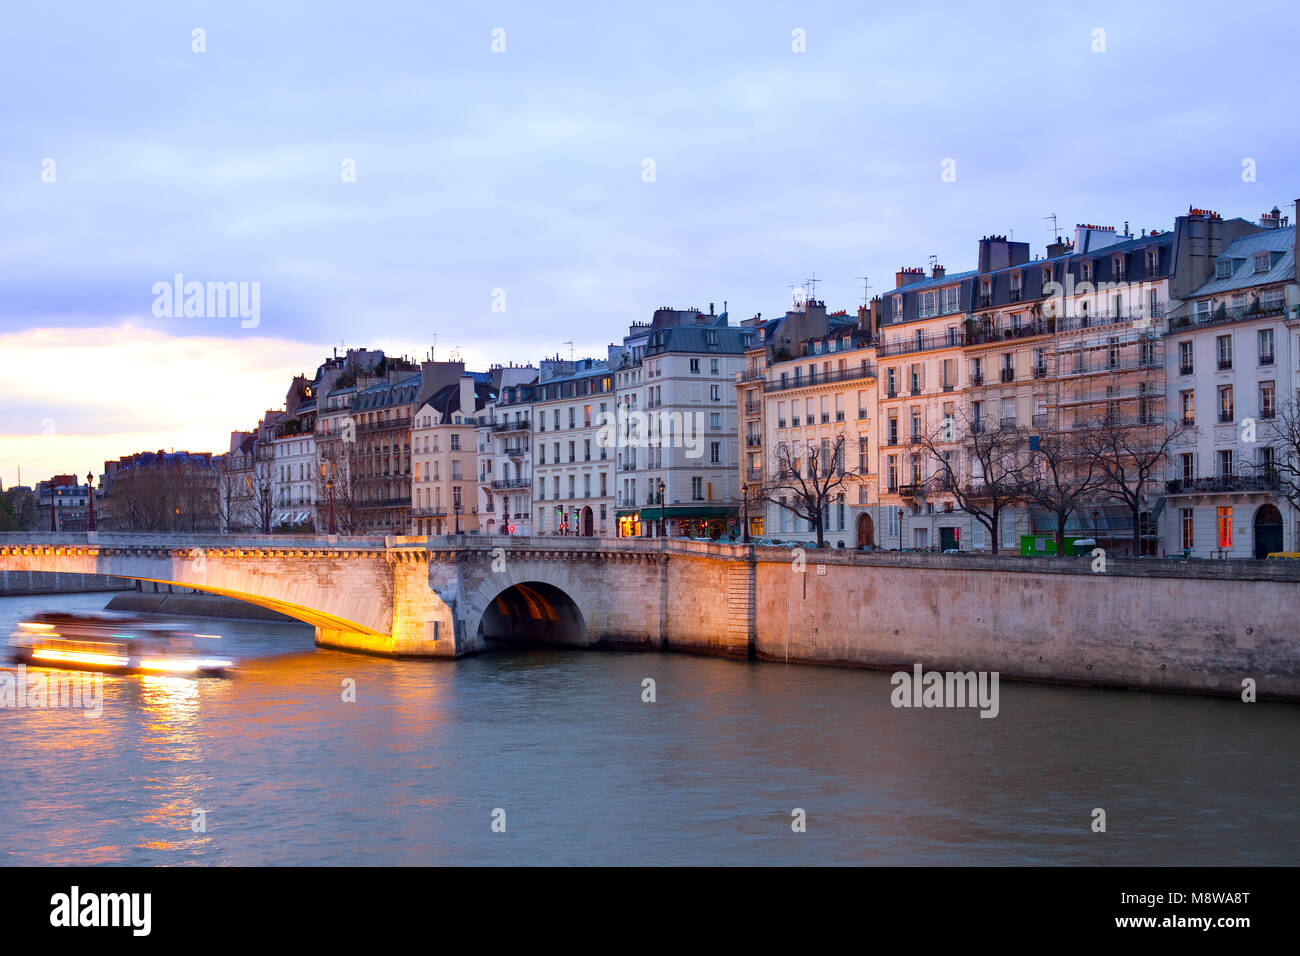 Bateau sur la Seine en passant par pont de la Tournelle pont en face de l'Ile Saint Louis, Paris, France Banque D'Images